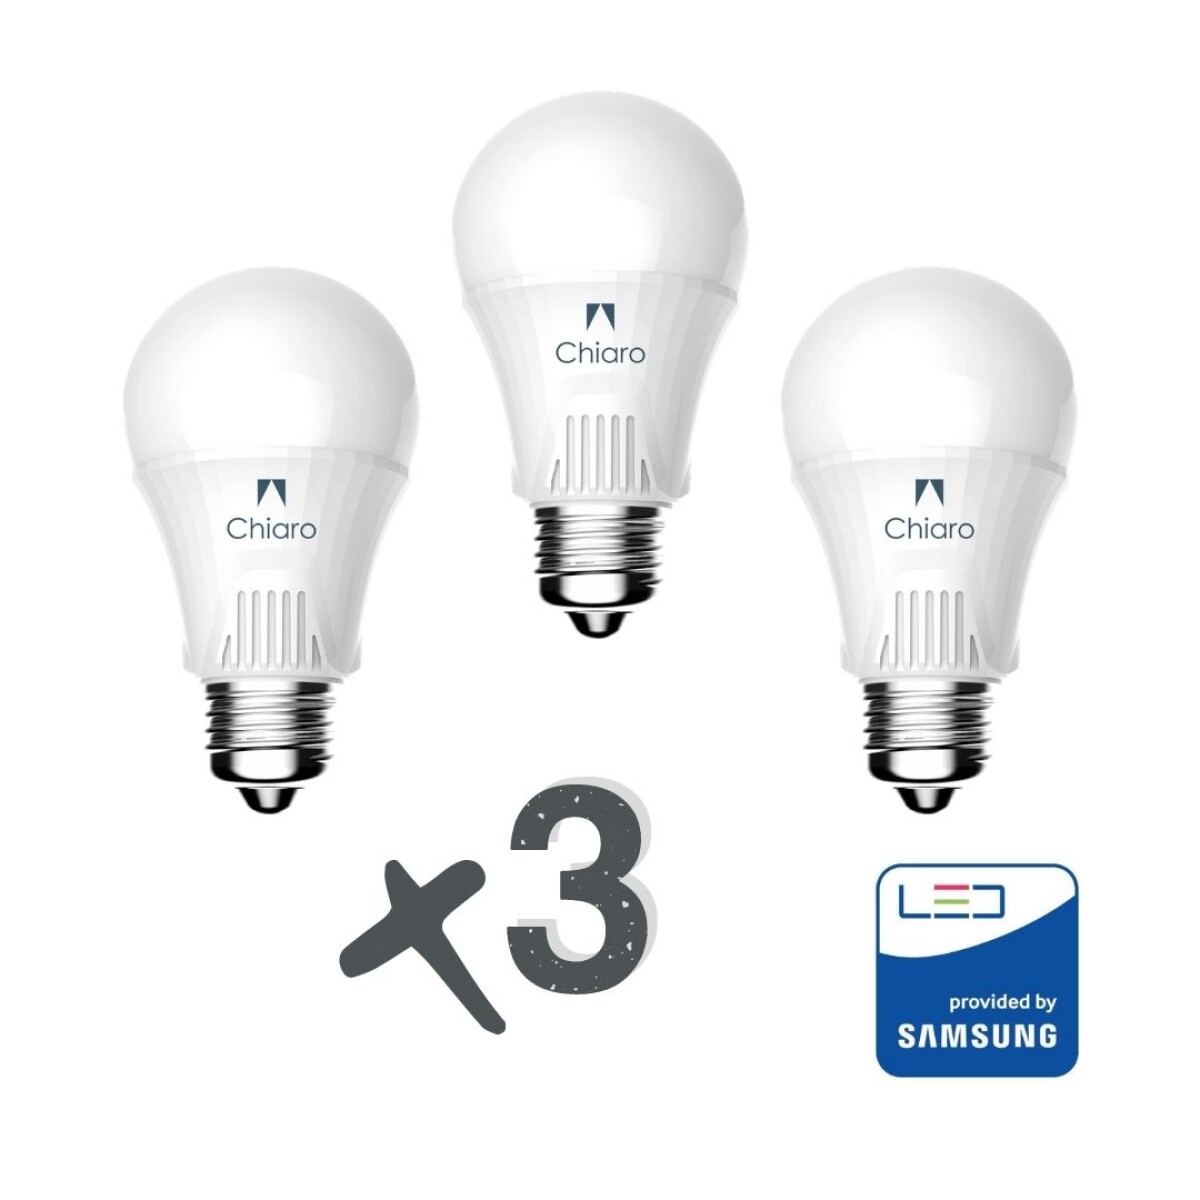 Pack x 3 lámparas led estándar 7w E27 CHIP SAMSUNG - Luz cálida 